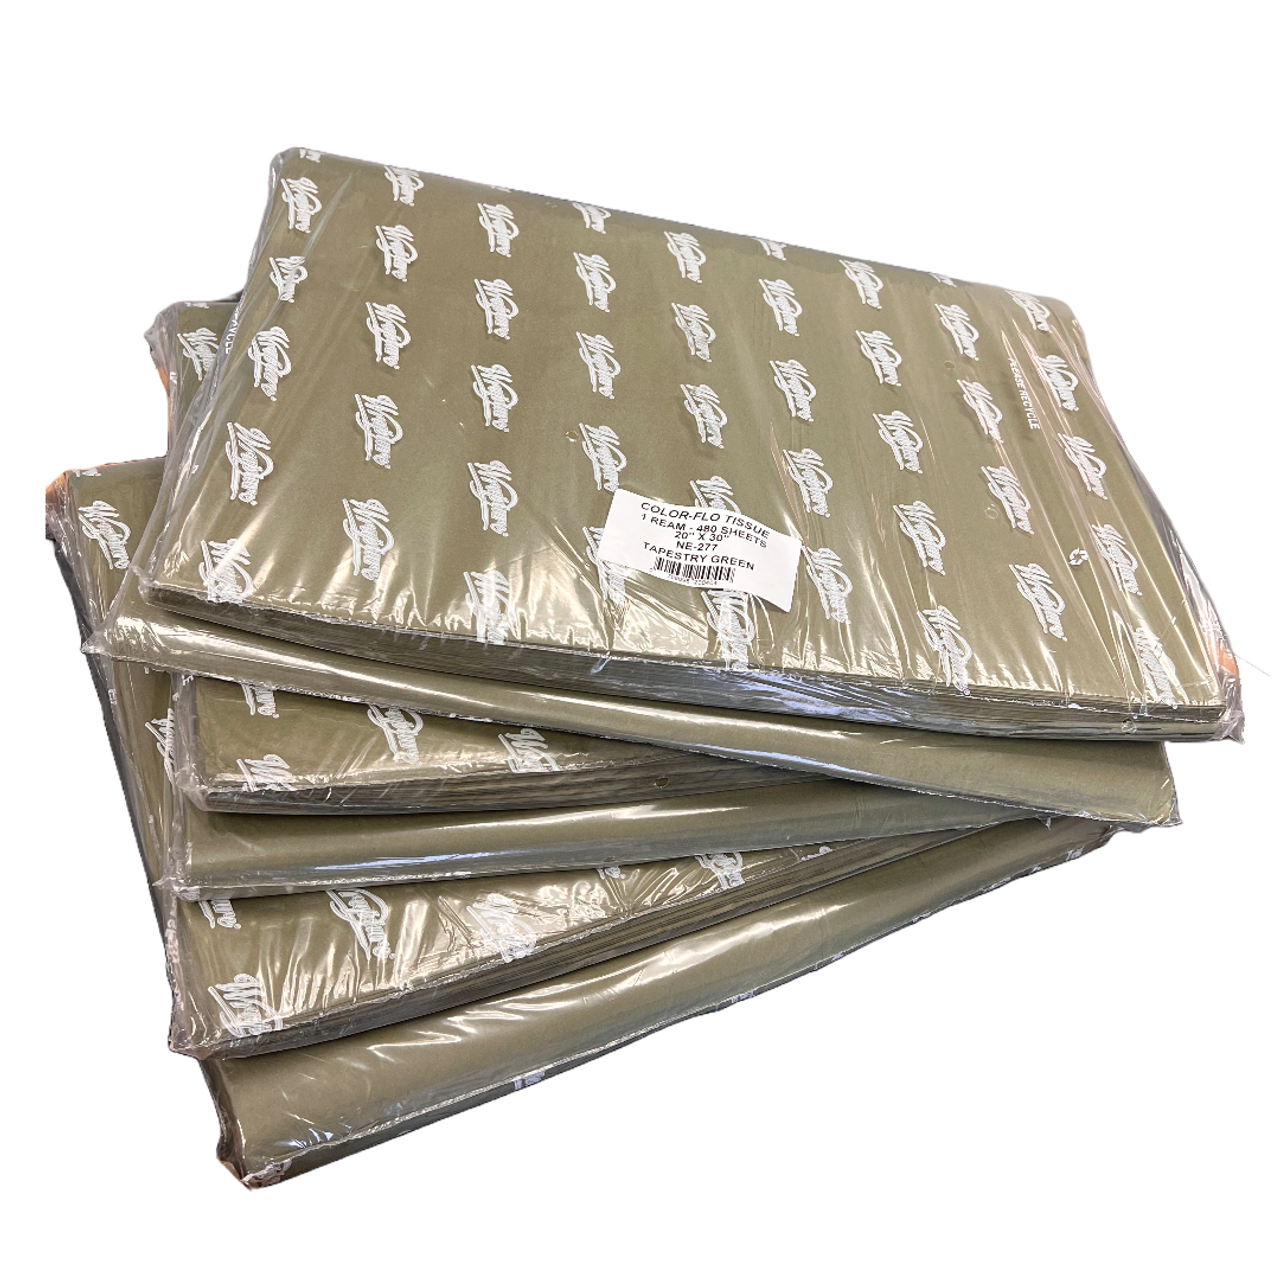 Colored Tissue Paper - Mocha - 480 Sheets per Ream